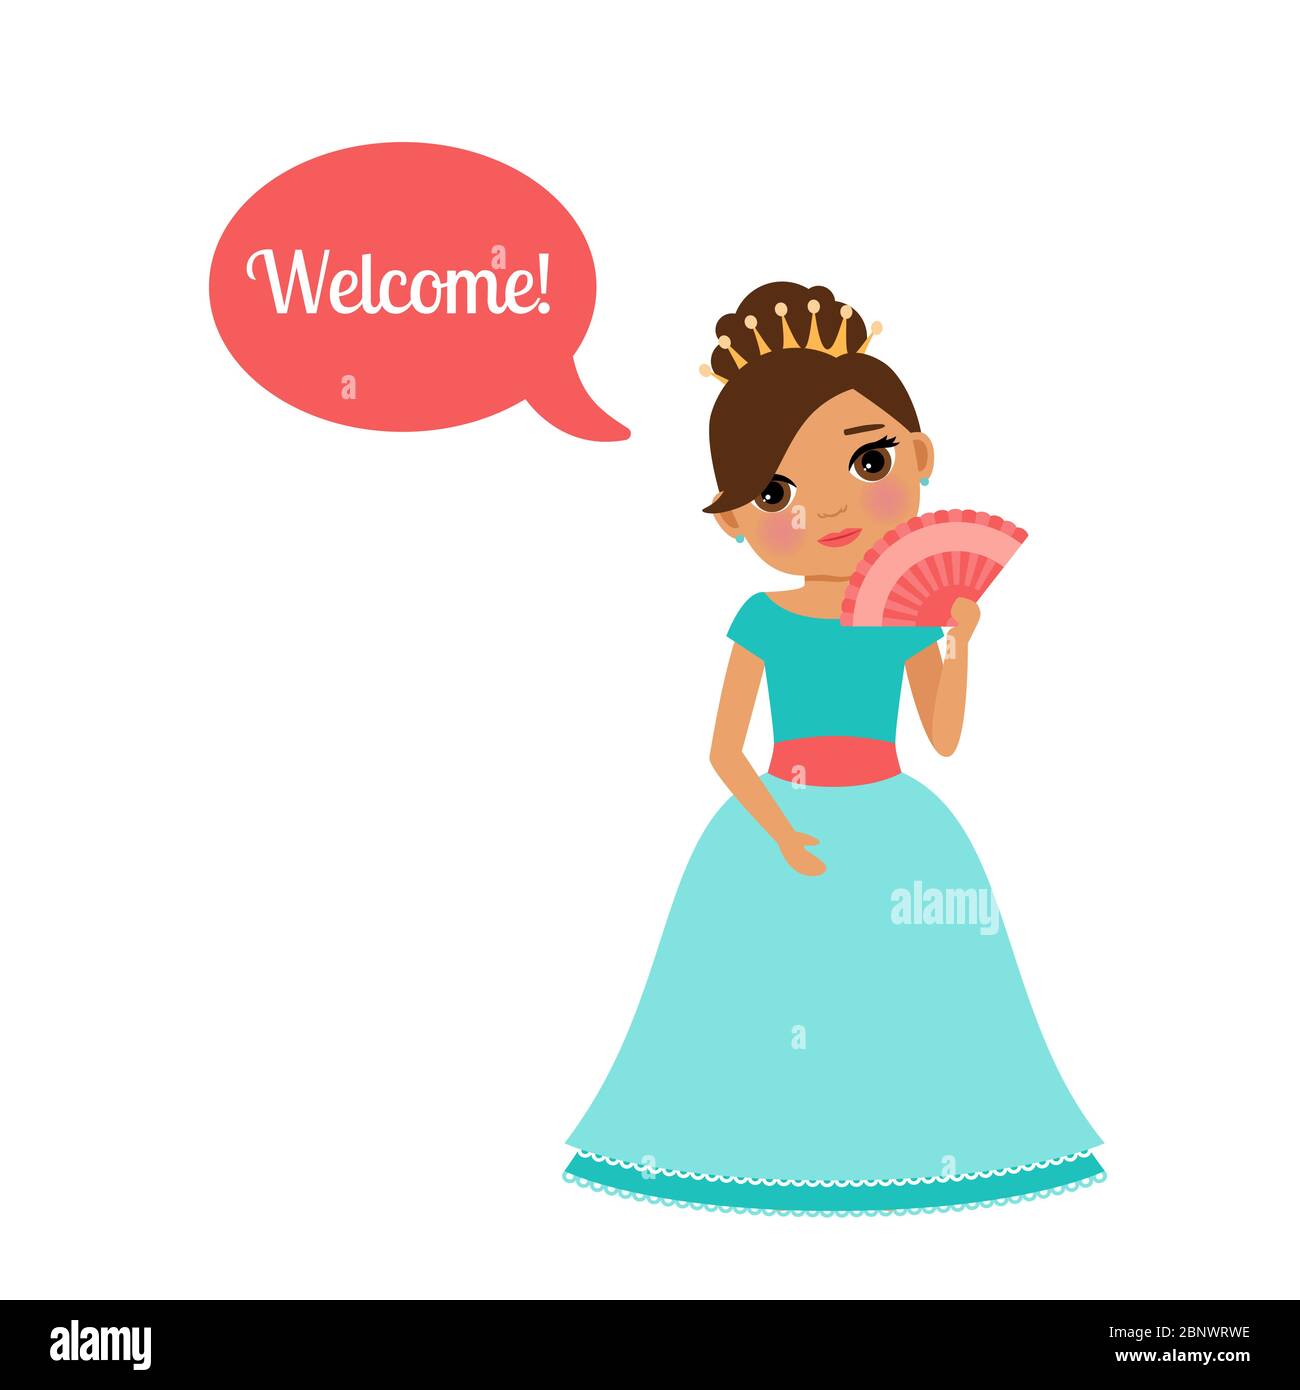 Adorable princesse de dessin animé avec bulle de discours Bienvenue pour le dessin de jeu illustration vectorielle Illustration de Vecteur